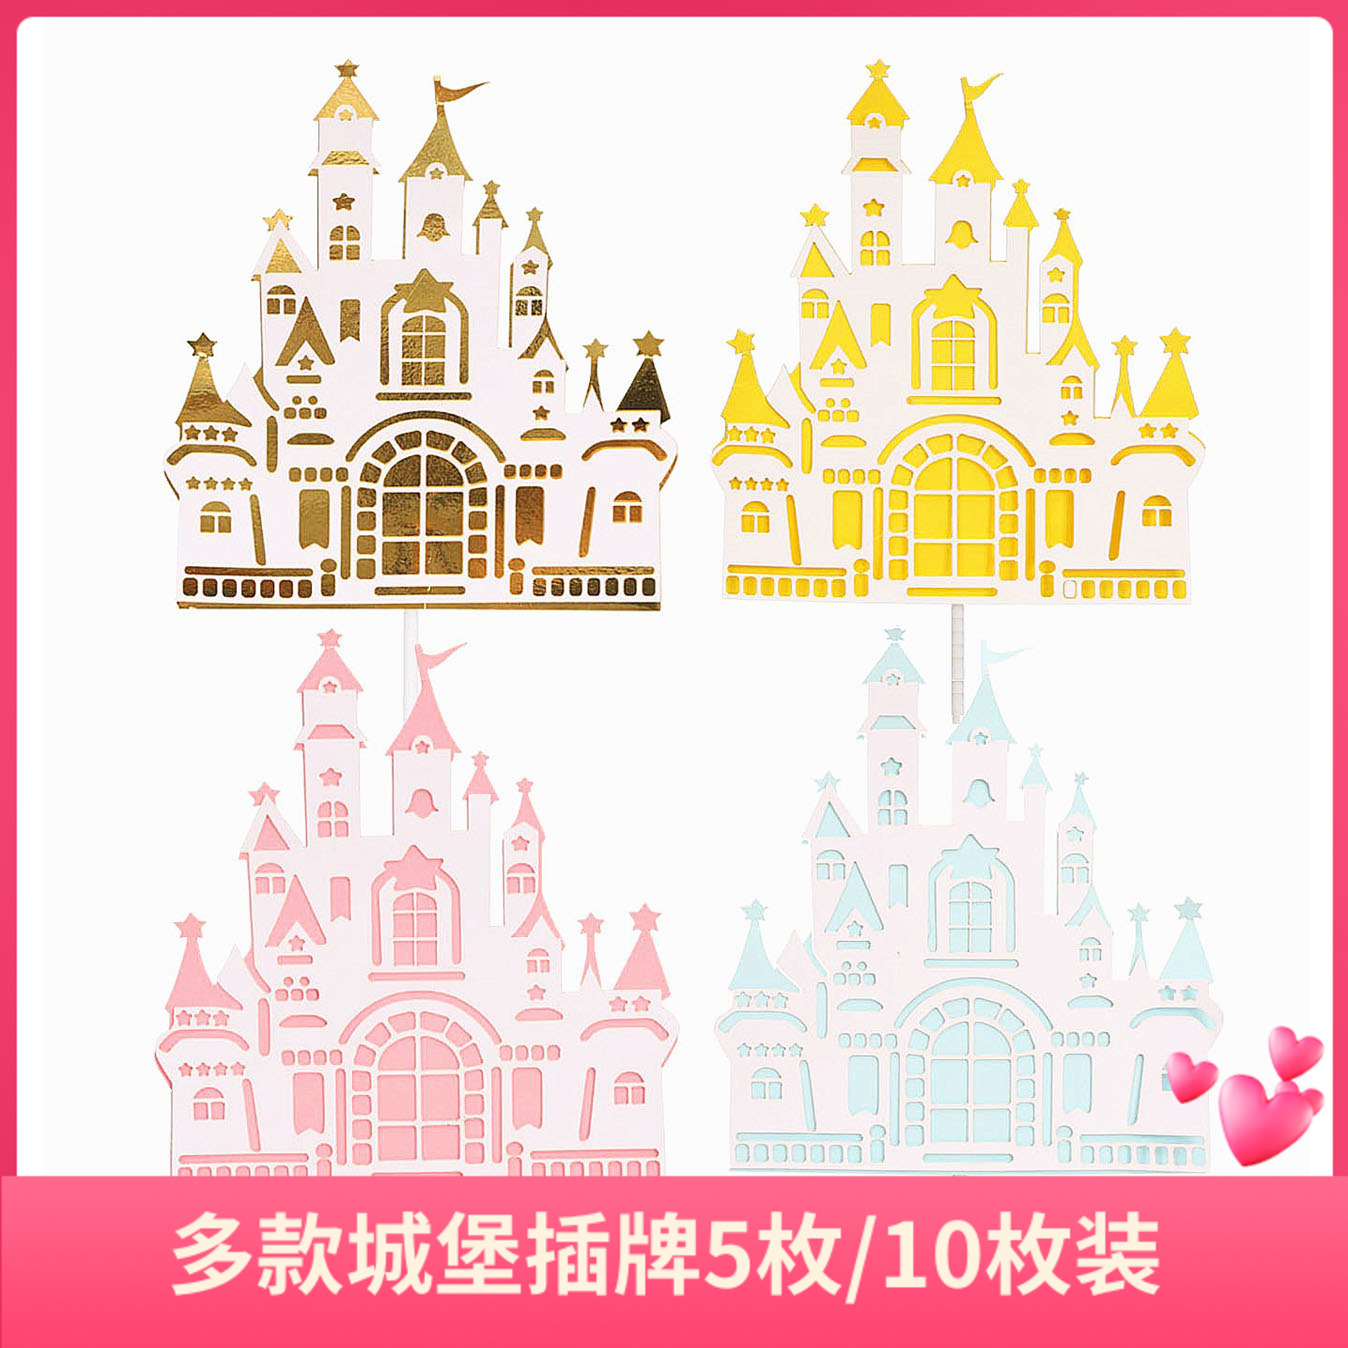 5枚装双层纸质城堡蛋糕装饰插牌 公主生日派对甜品台插件烘焙用品